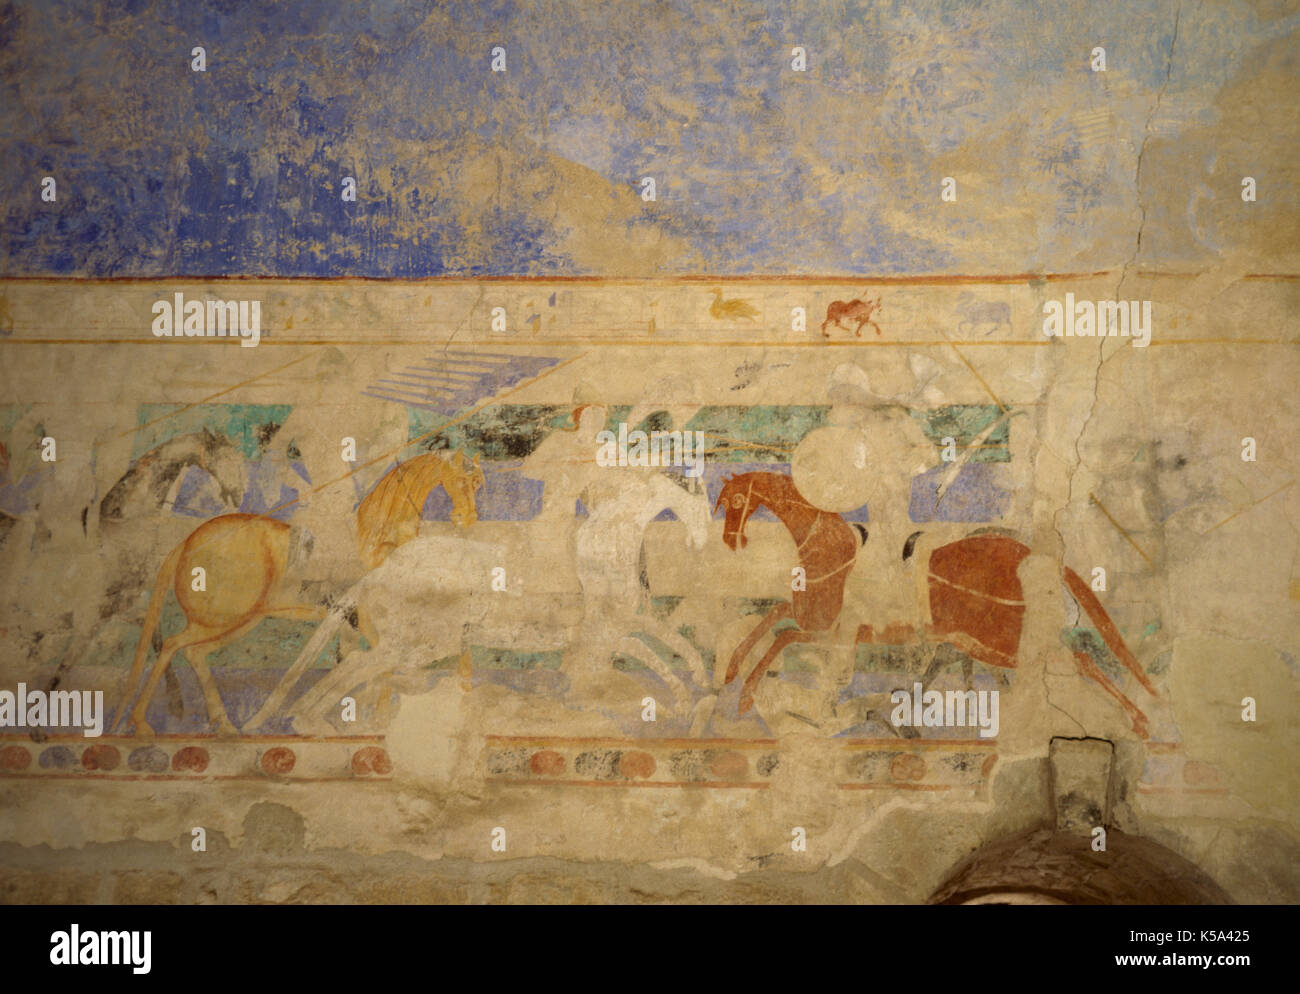 Tournoi médiéval. La peinture murale. Lutte à cheval entre deux chevaliers, l'un d'entre eux et les catholiques d'autres cathares. Musée du Château Comtal, Carcassonne, France. Banque D'Images